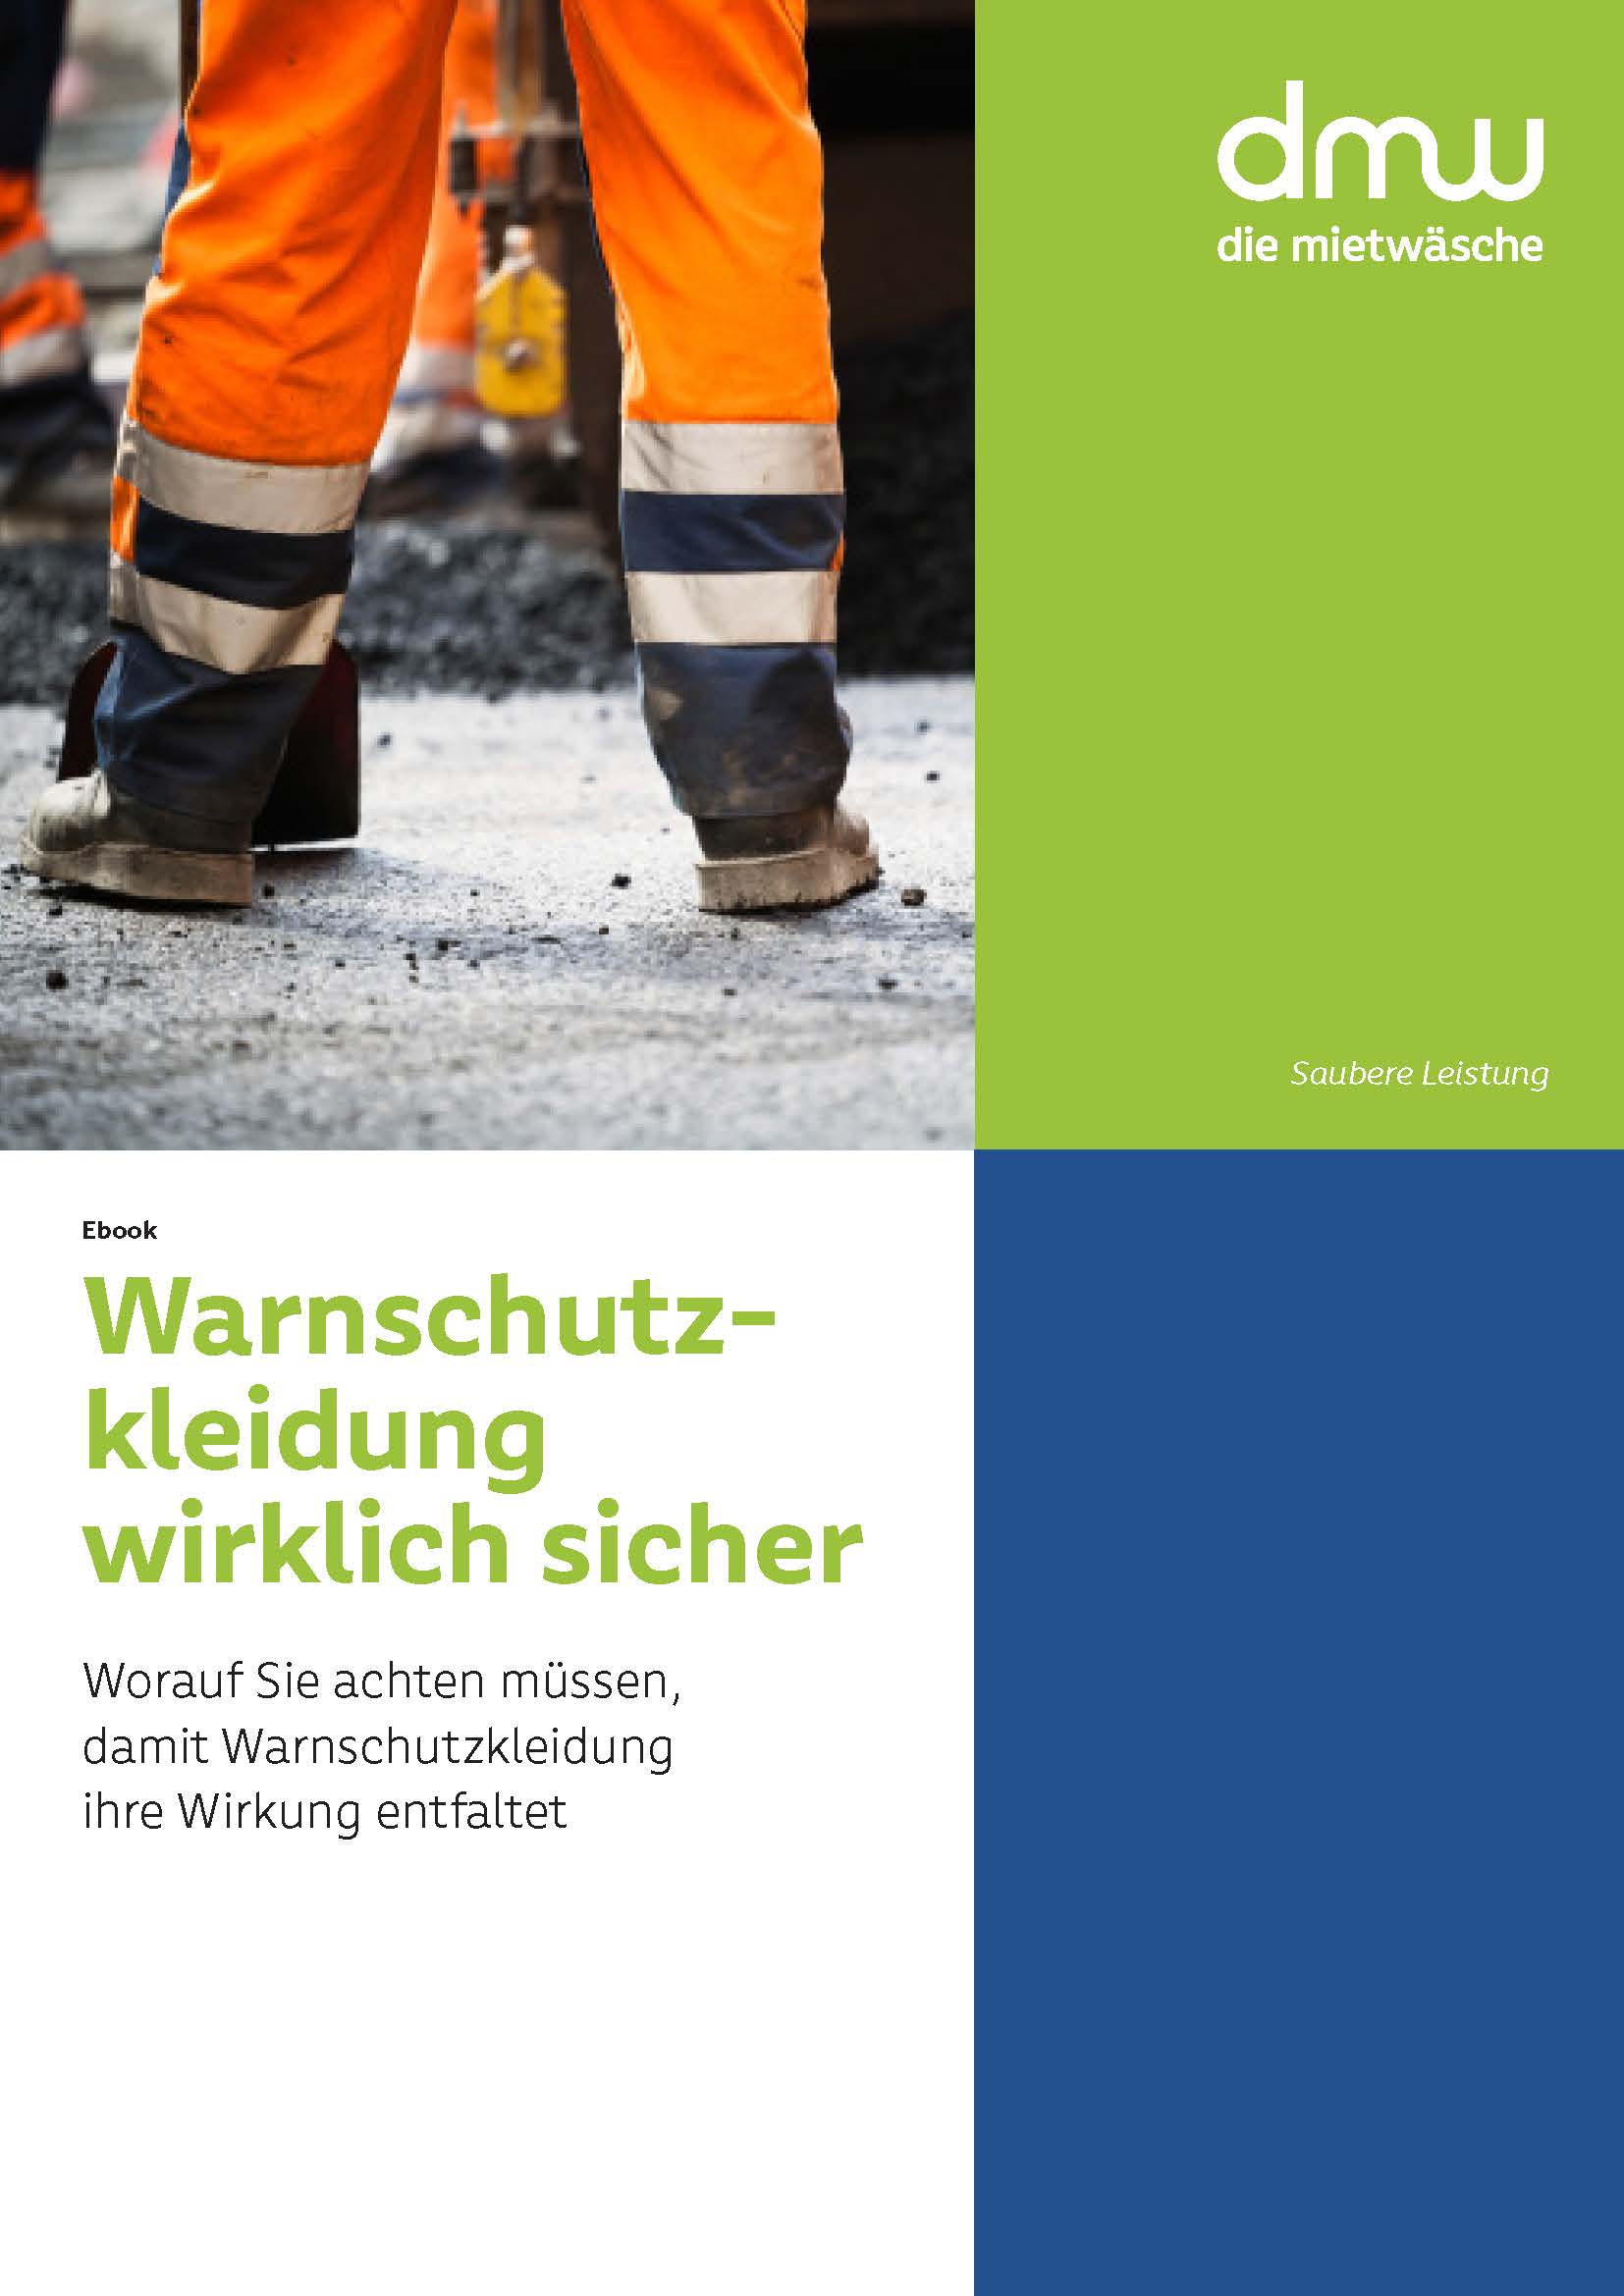 E-Book-Cover für Warnschutzkleidung, unterer Beinbereich einer Person mit orange-blauer Warnschutzkleidung